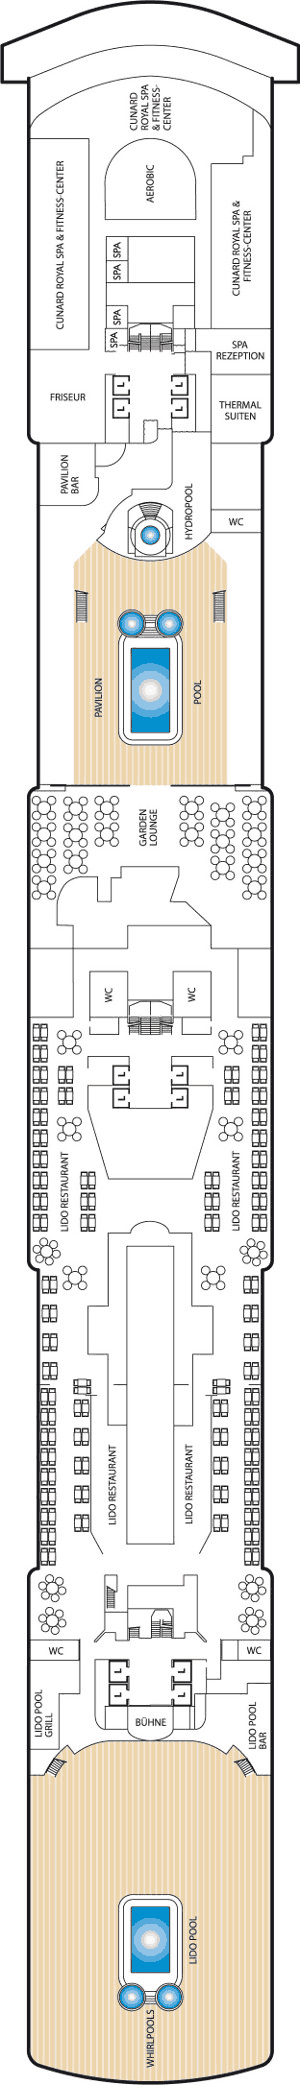 Queen Elizabeth - Decksplan Deck 9